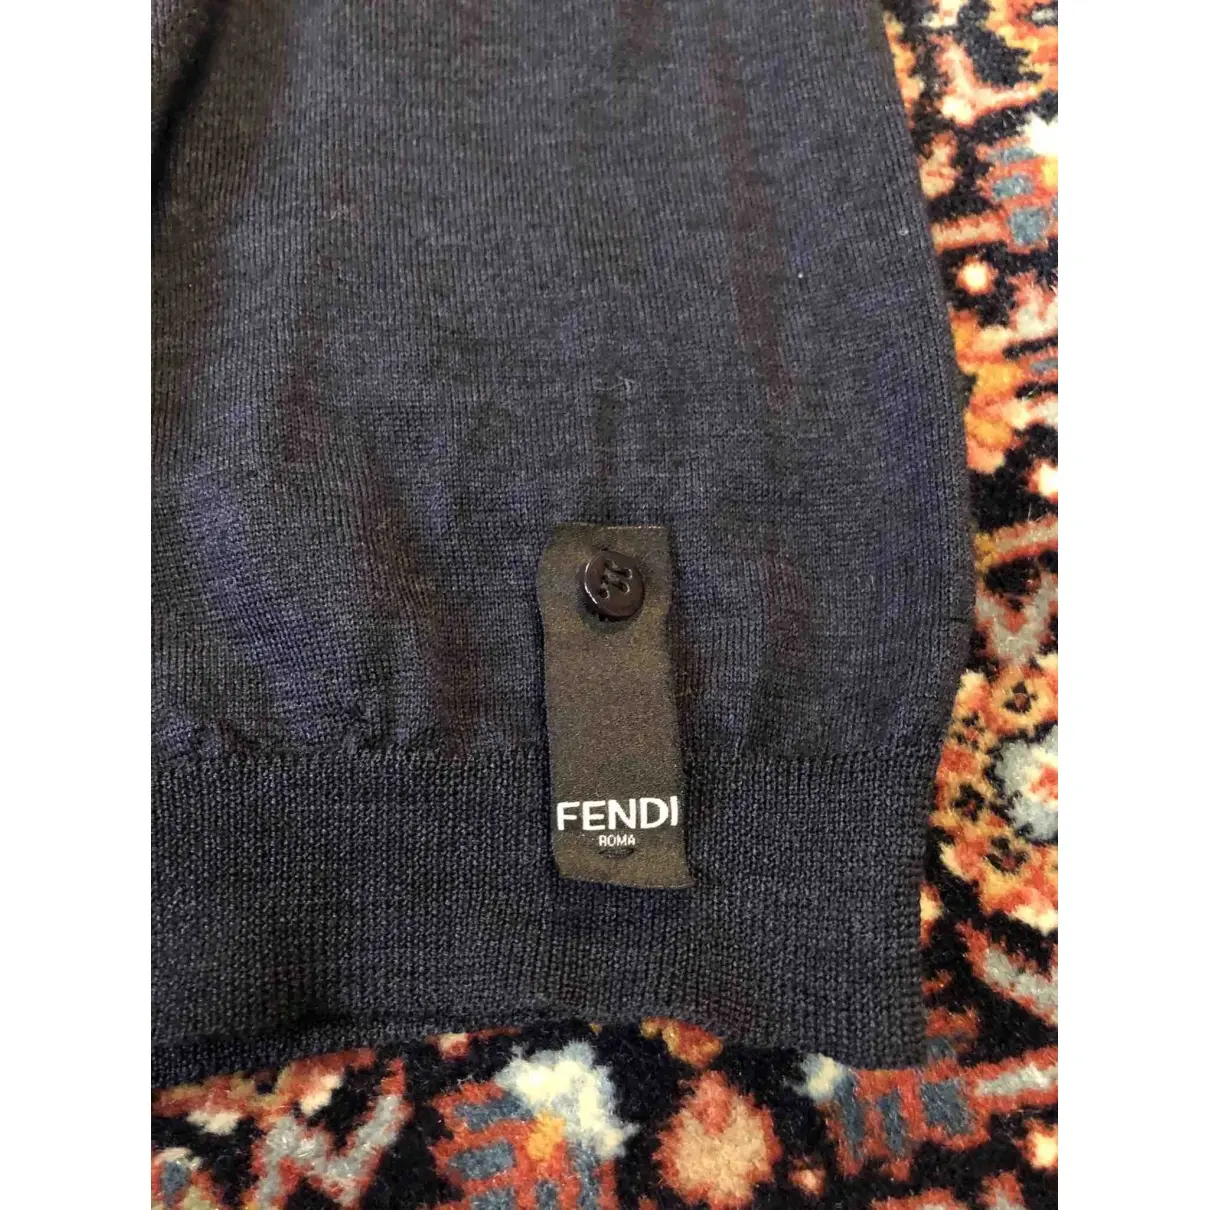 Buy Fendi Wool pull online